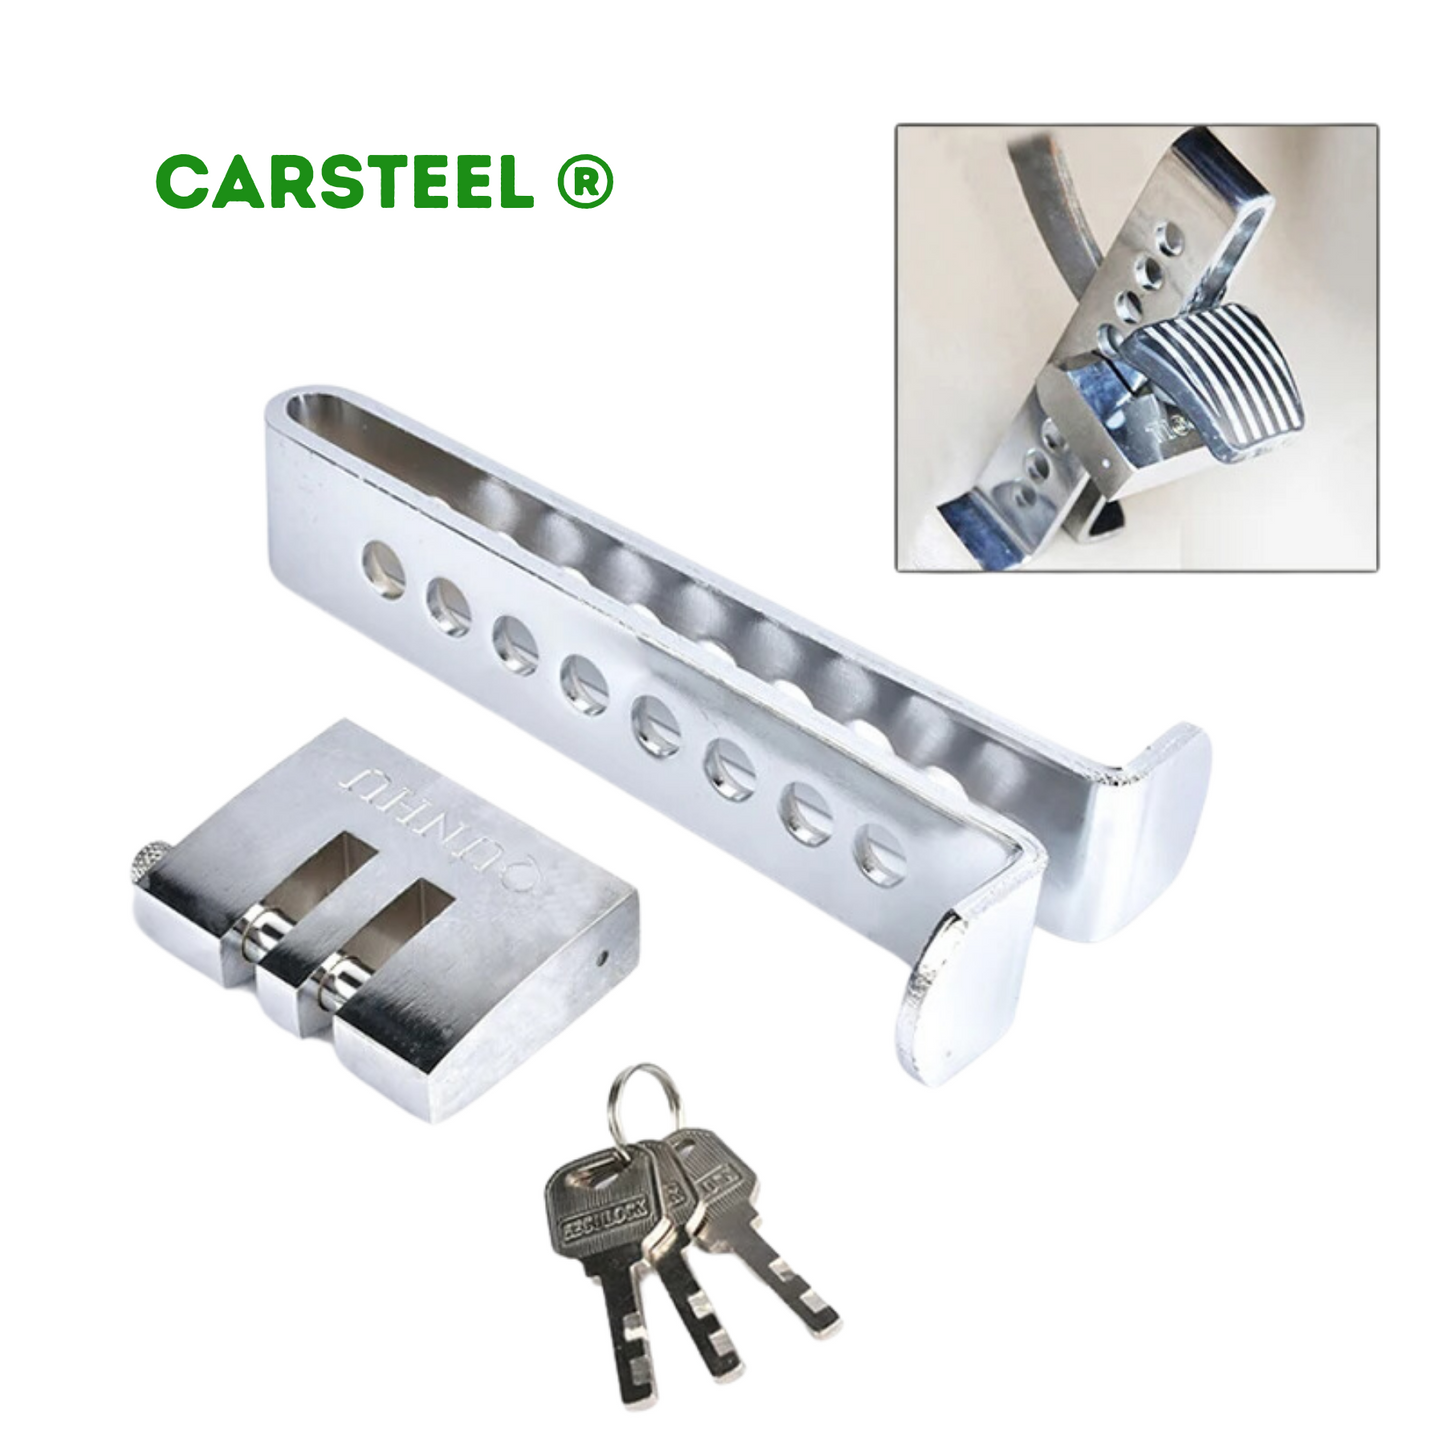 Carsteel ® - Bloqueador de Pedal